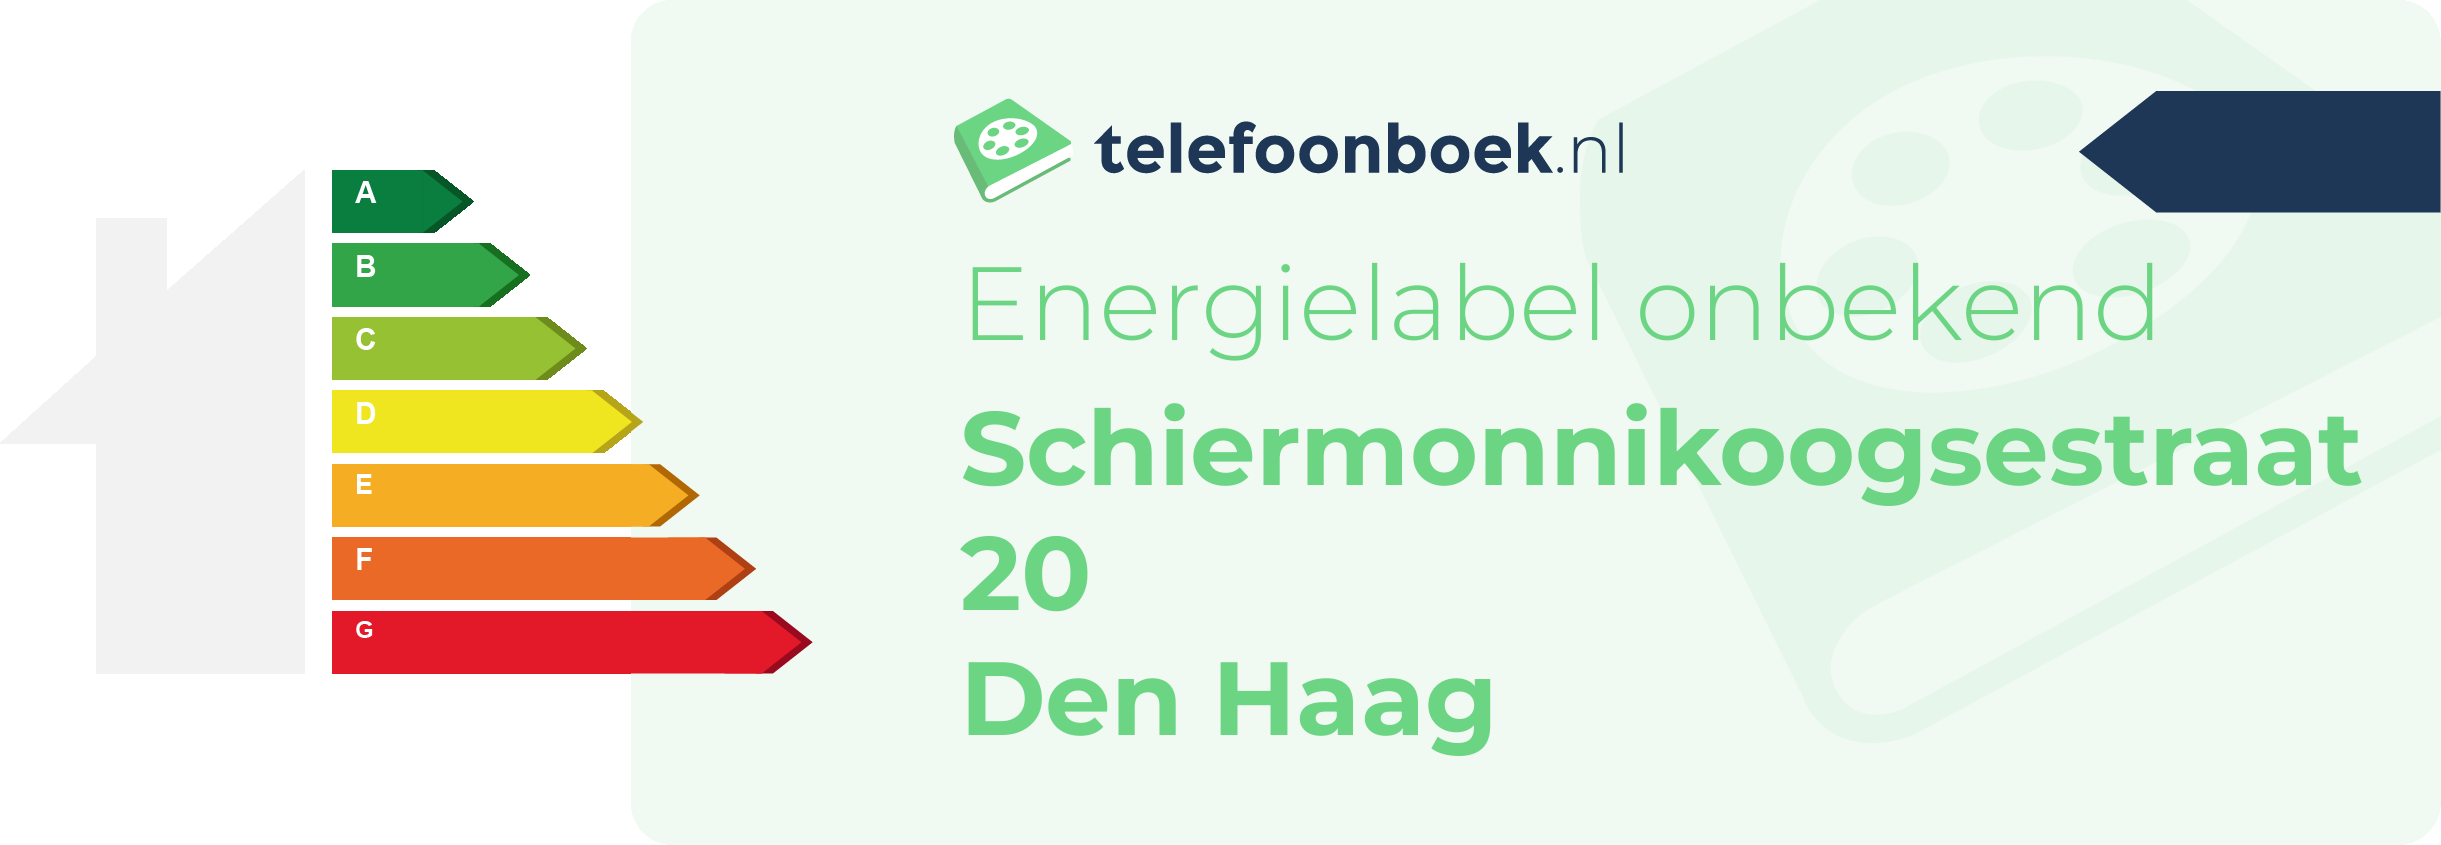 Energielabel Schiermonnikoogsestraat 20 Den Haag